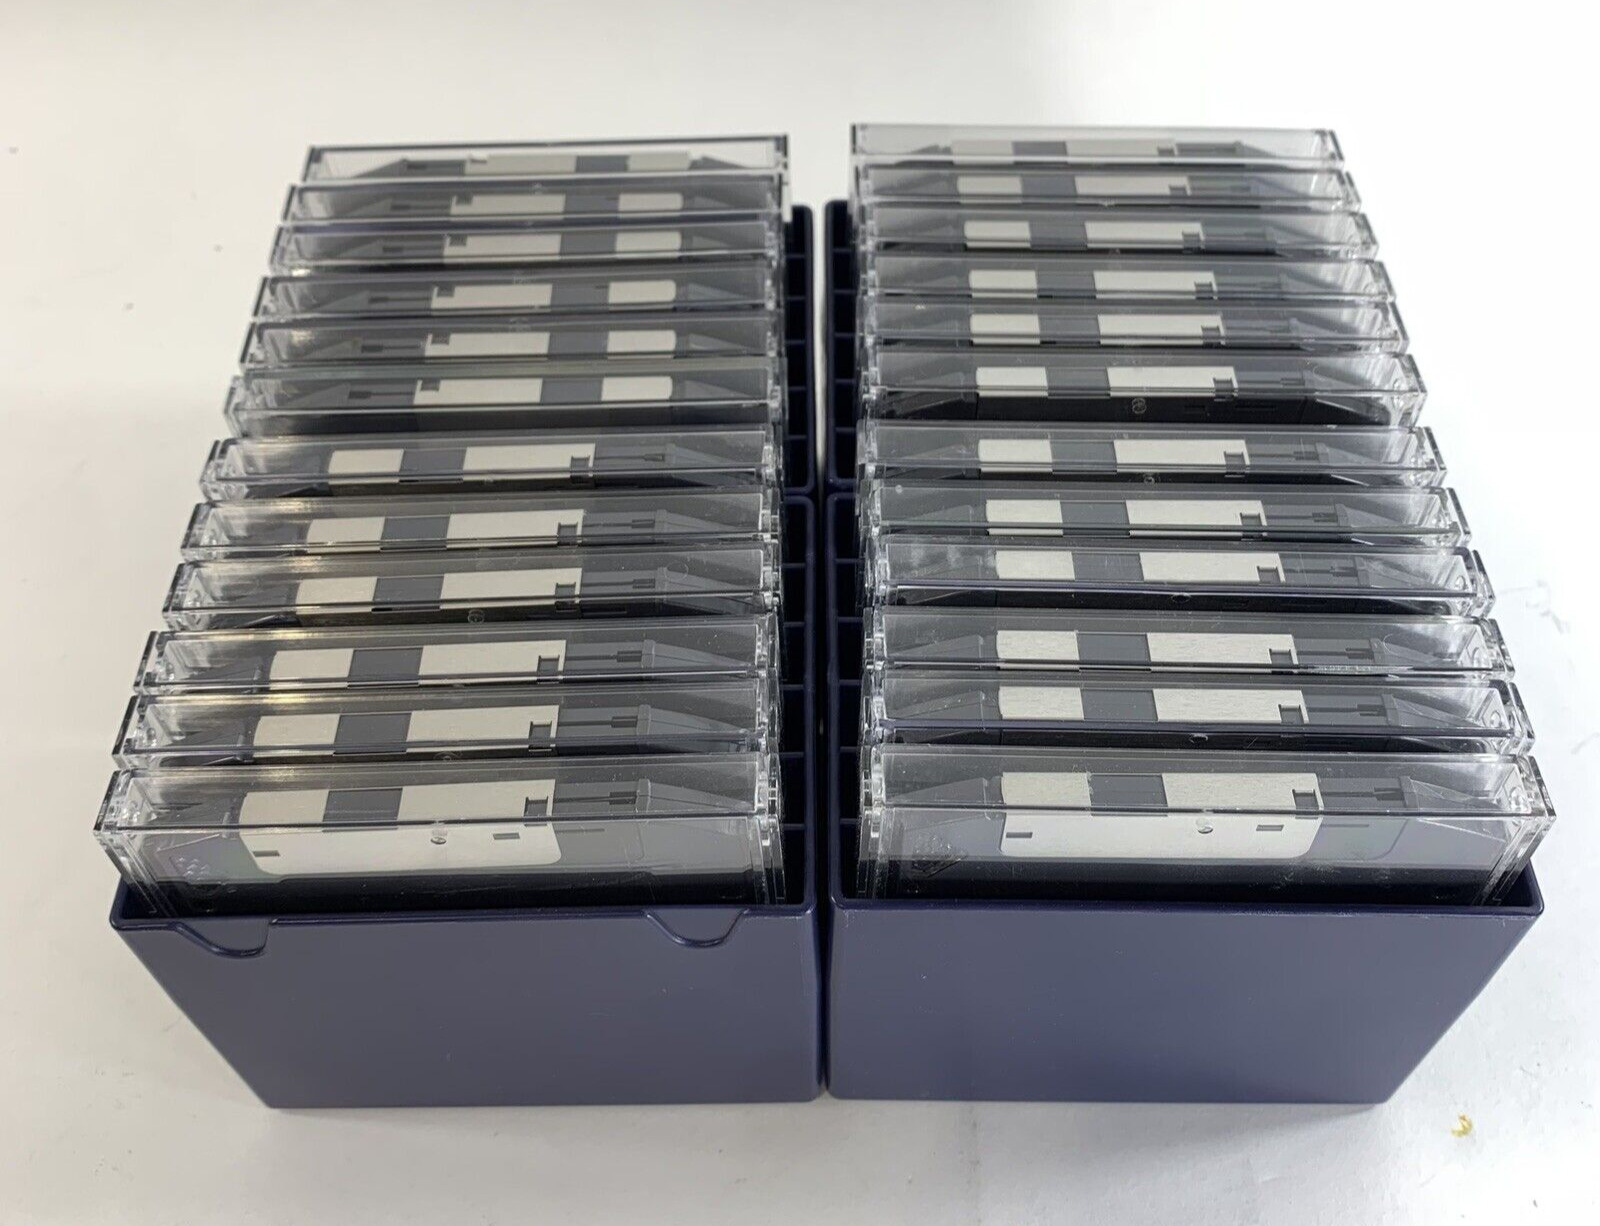 1994 Iomega 100 MB Zip Disks In Iomega Cases (Lot Of 24)